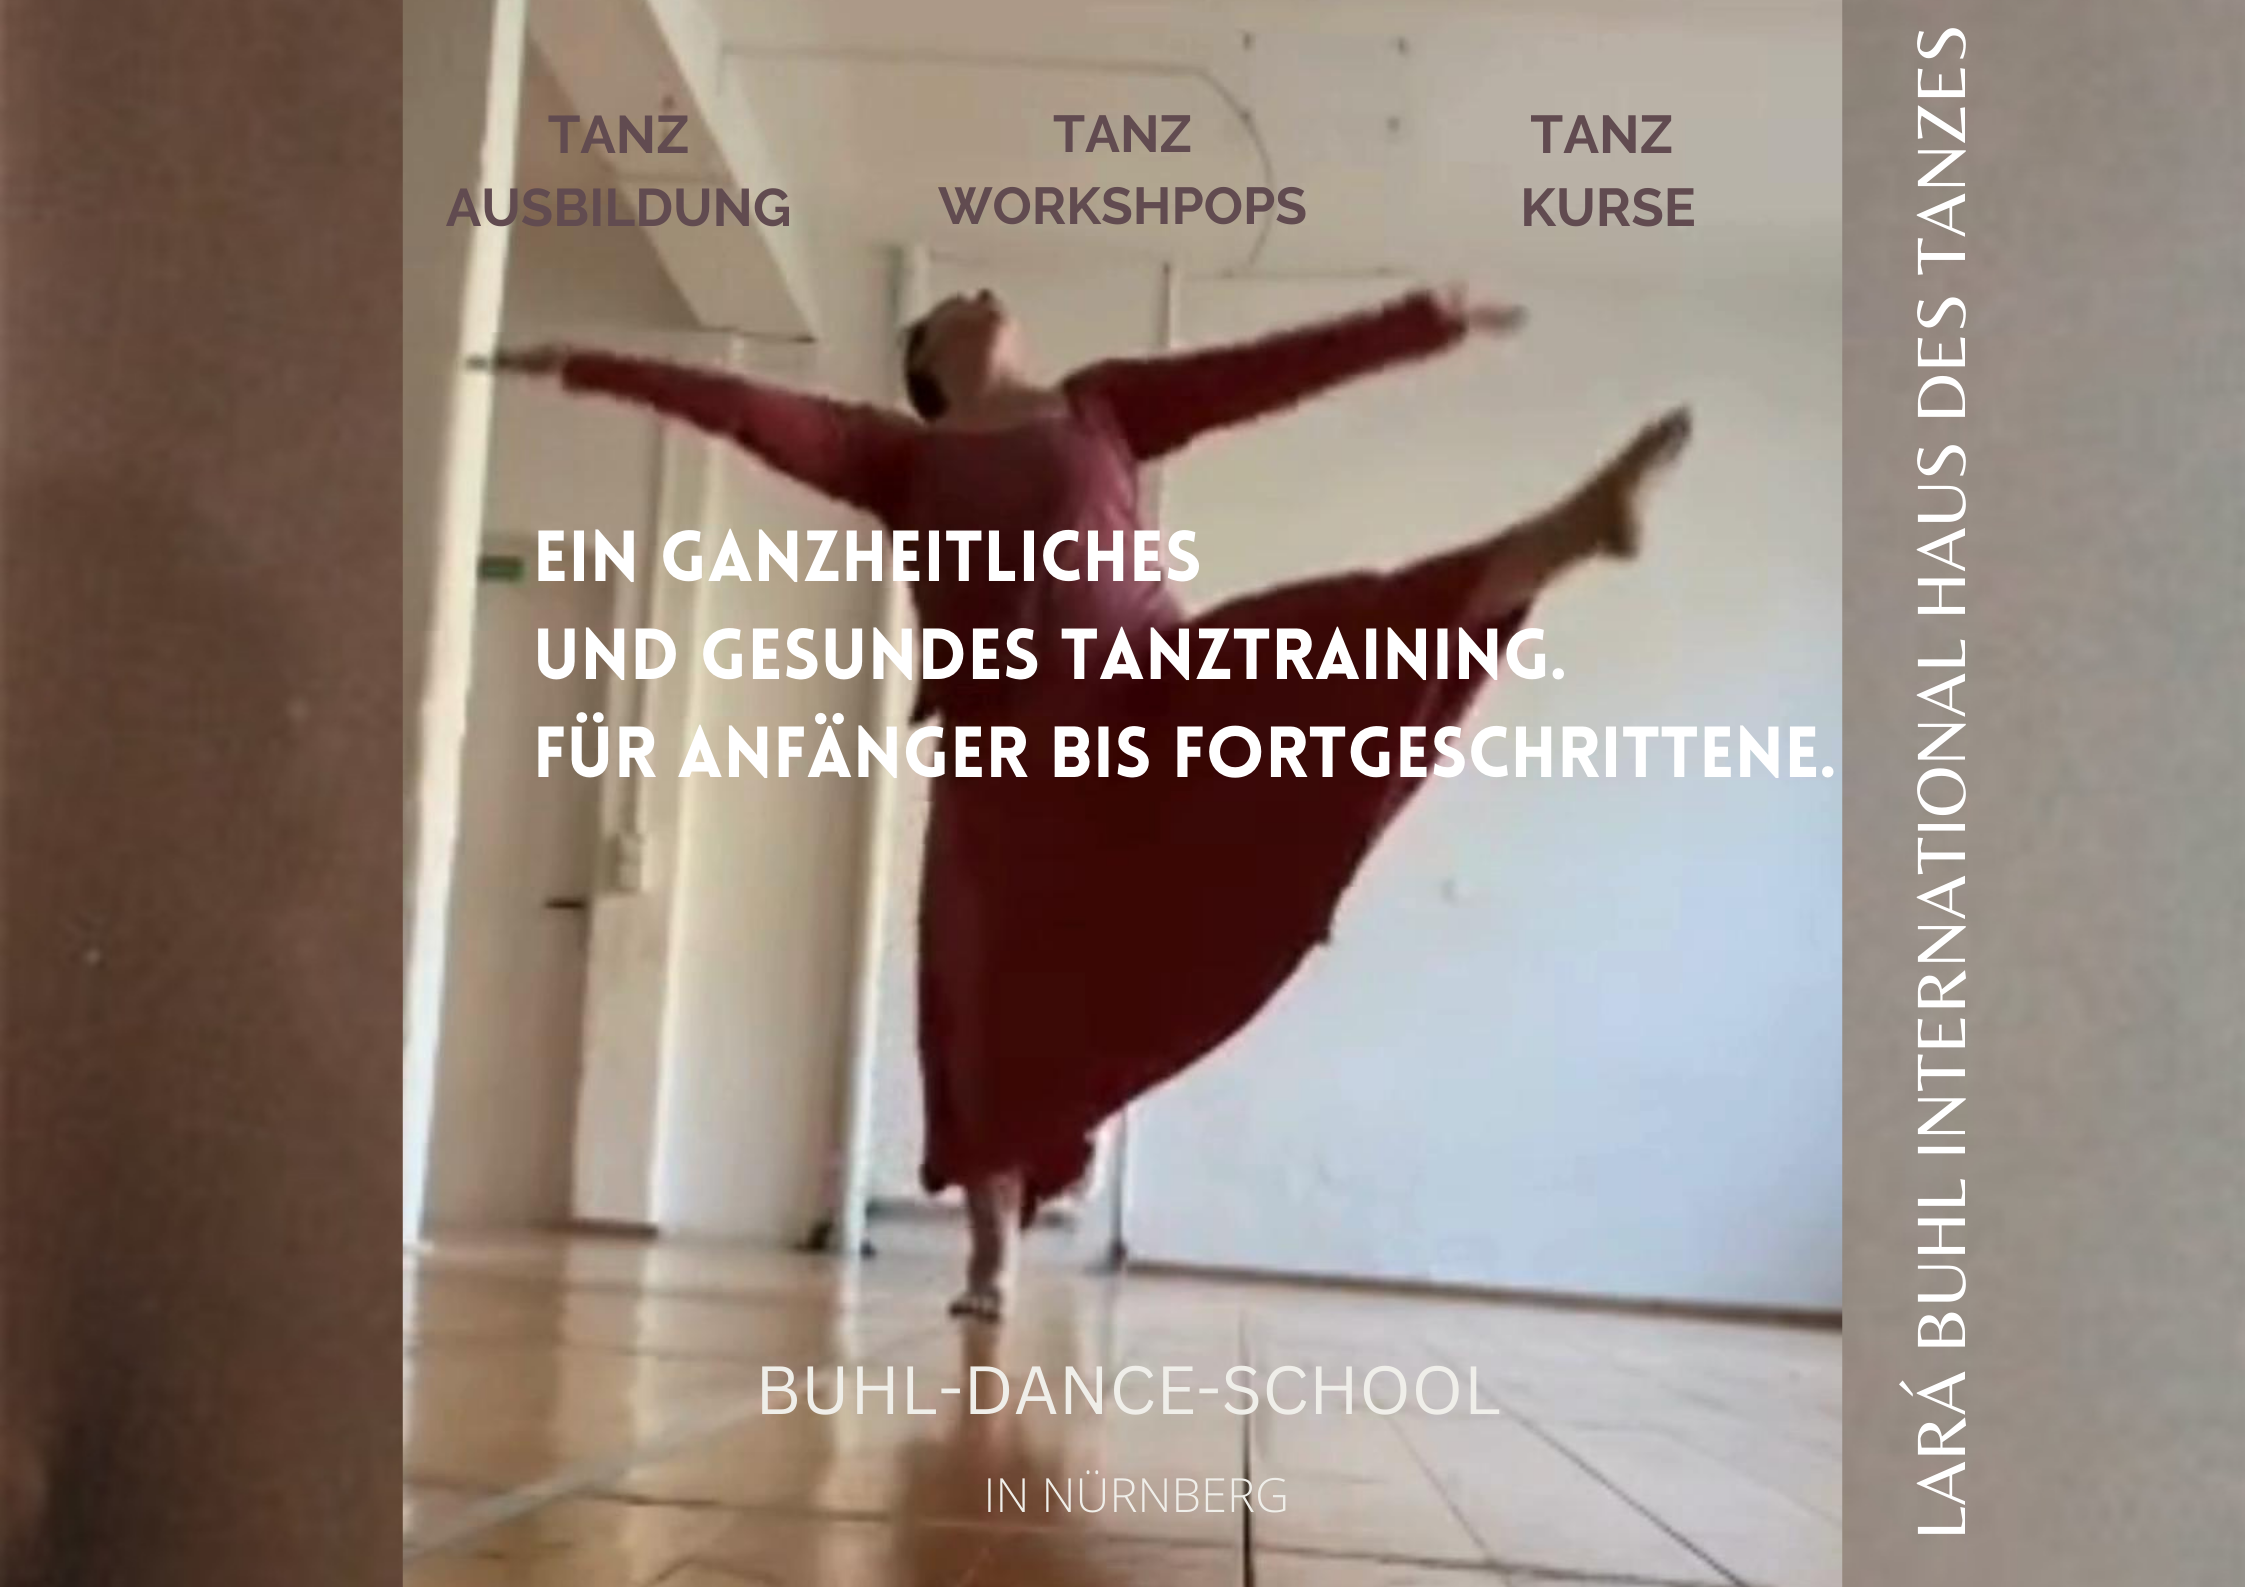 LARA BUHL HAUS DES TANZES TANZERNEUERUNG MODERN DANCE/CONTEMPORARY DANCE/JAZZ DANCE in nürnberg